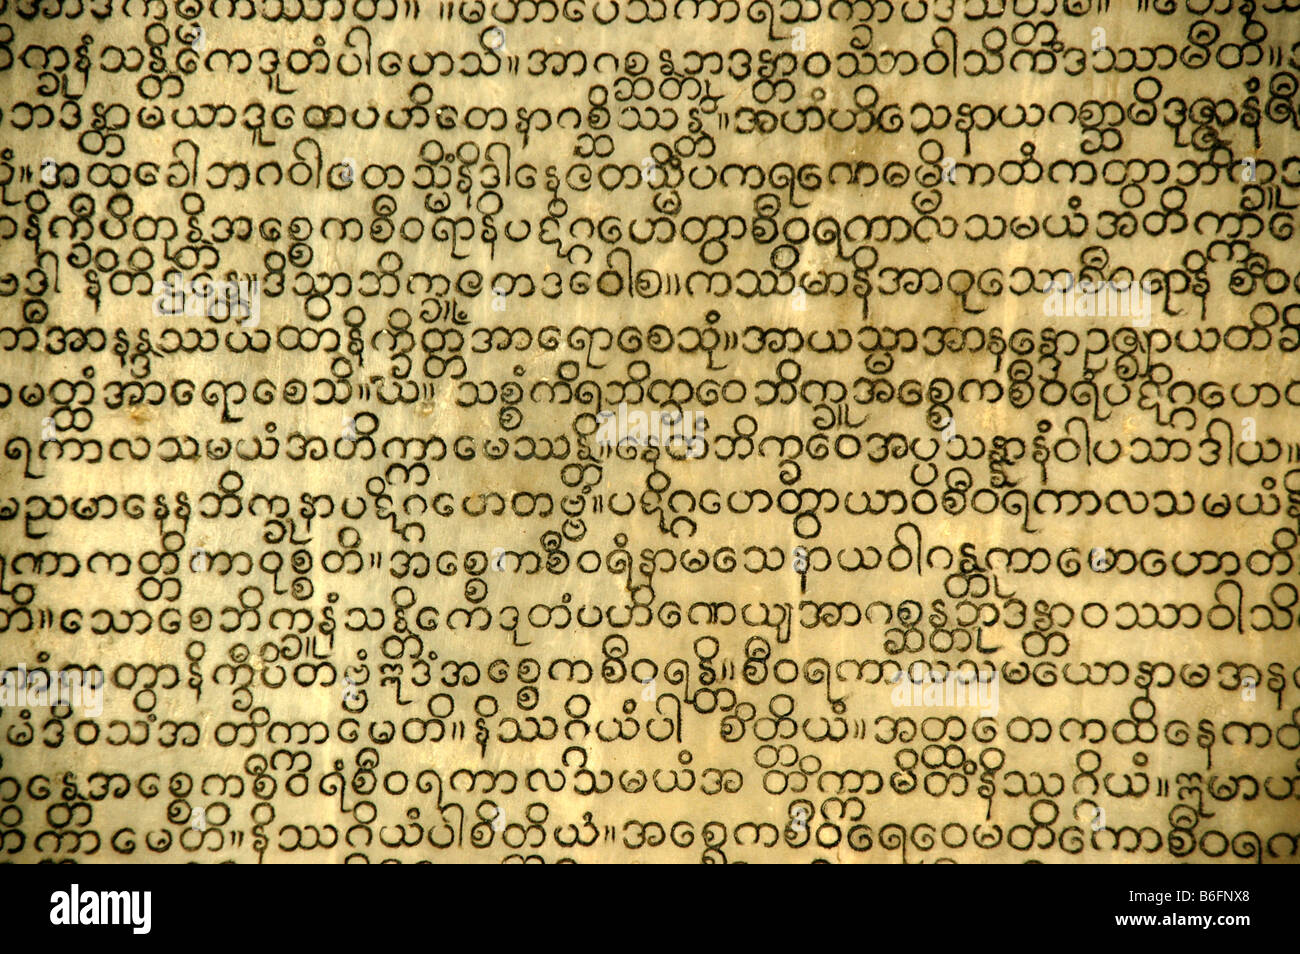 L'écriture birmane, canon pali, canon bouddhique, tripitaka, bibliothèque de tablettes de pierre, le Bouddhisme Theravada, la Pagode Kuthodaw, Mandalay Banque D'Images